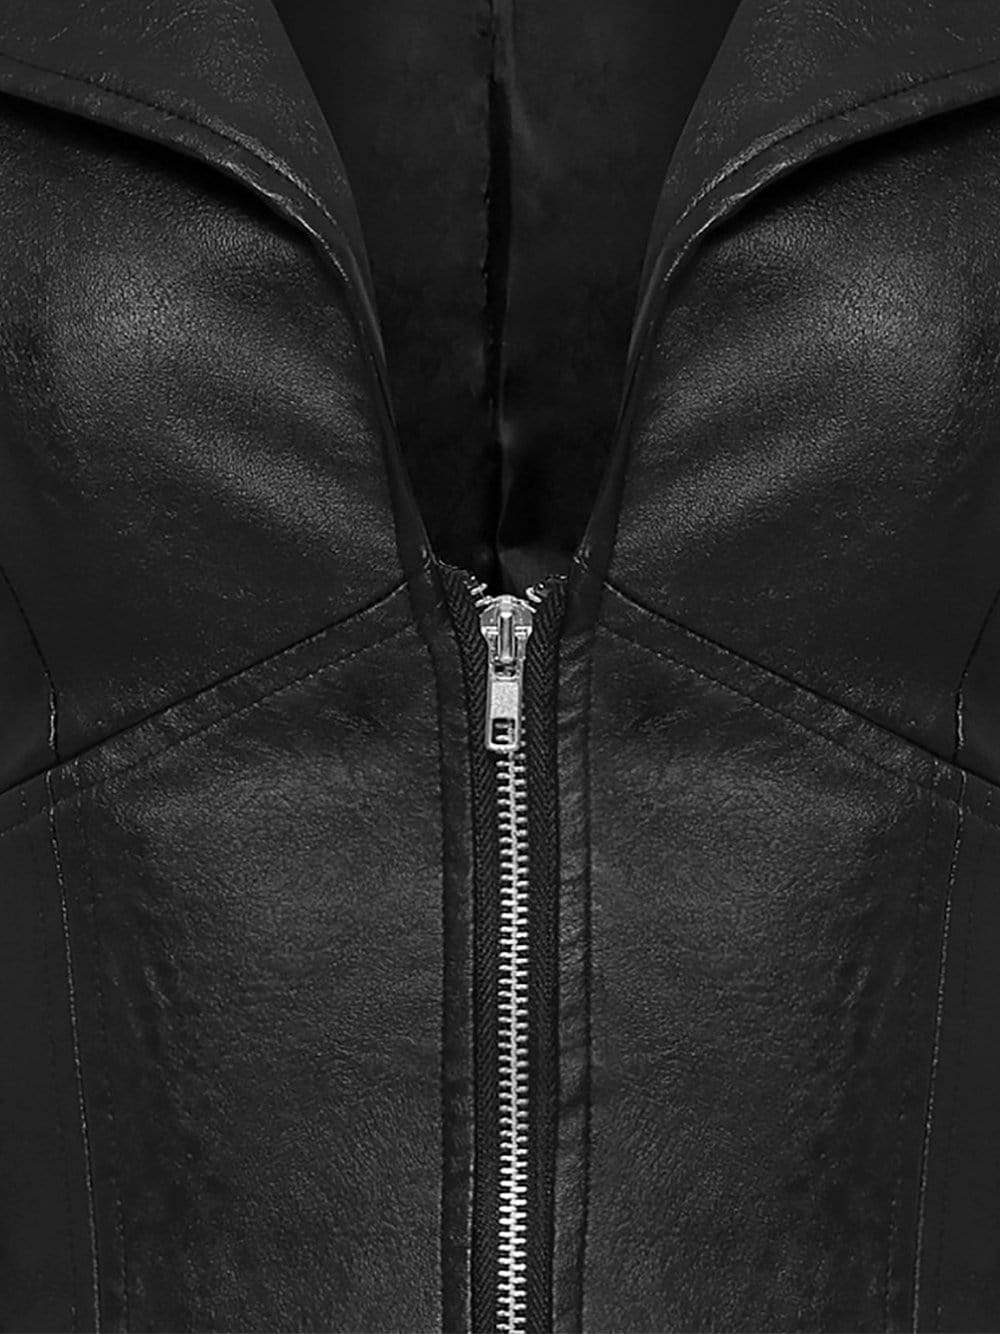 GF Faux-Leather Corset Jacket